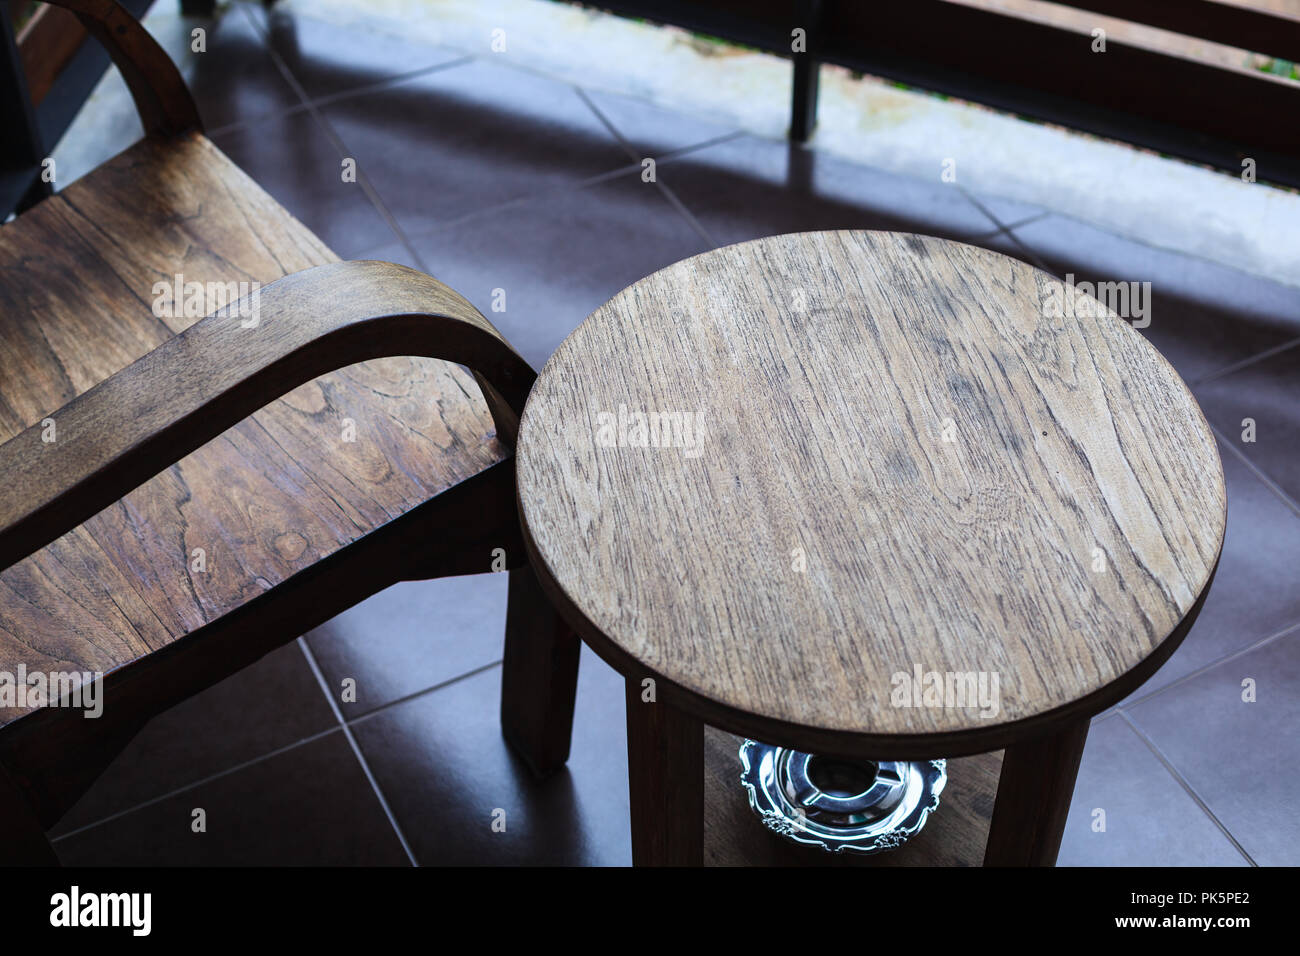 Indoor traditionellen tropischen Muster Holz Stuhl und Tisch mit